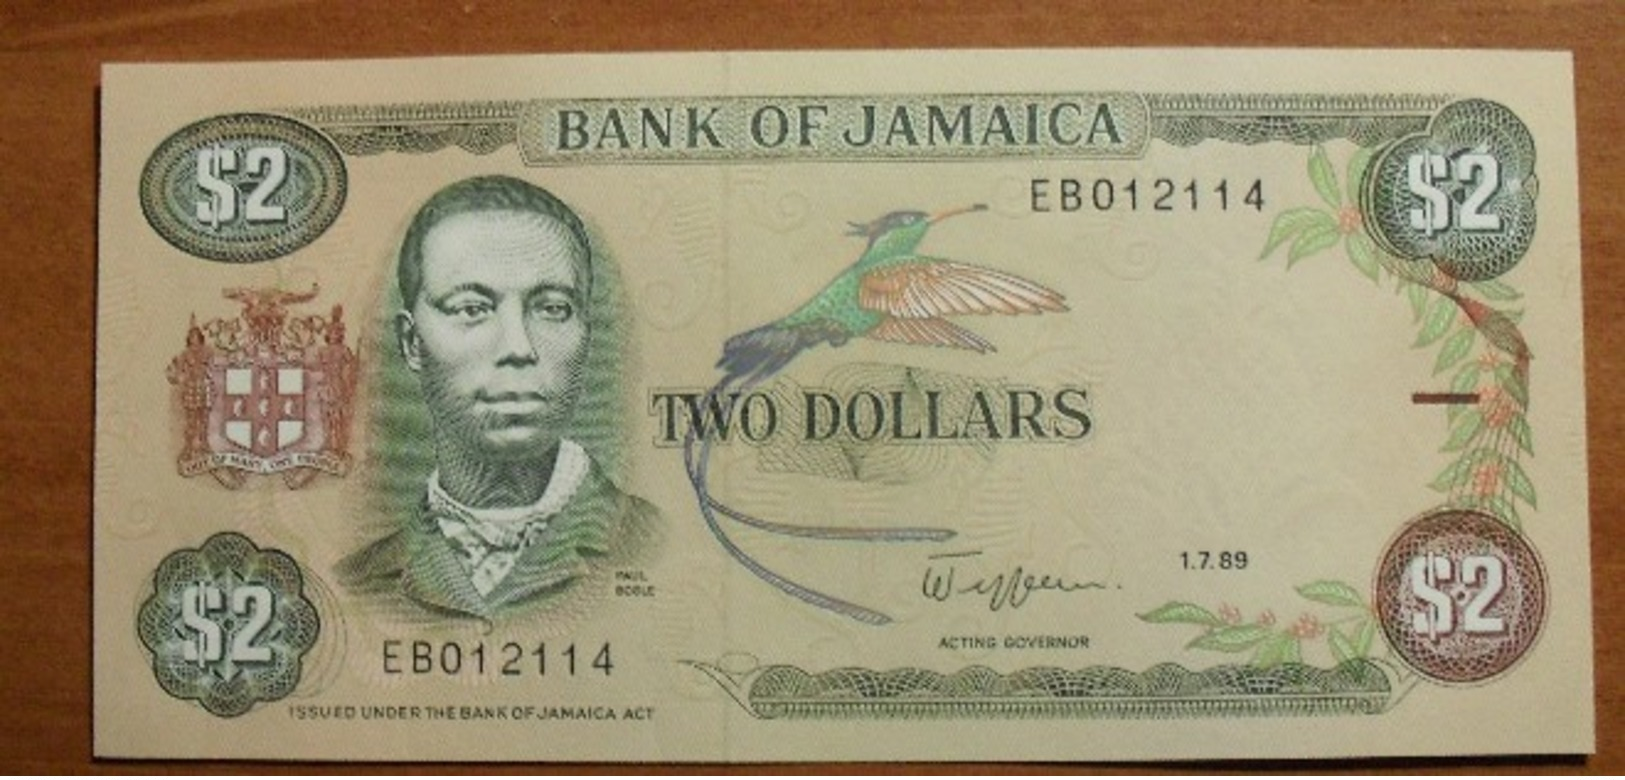 1989 - Jamaique - Jamaica - TWO DOLLARS, Paul Bogle, 1.7.89, EB012114 - Jamaique